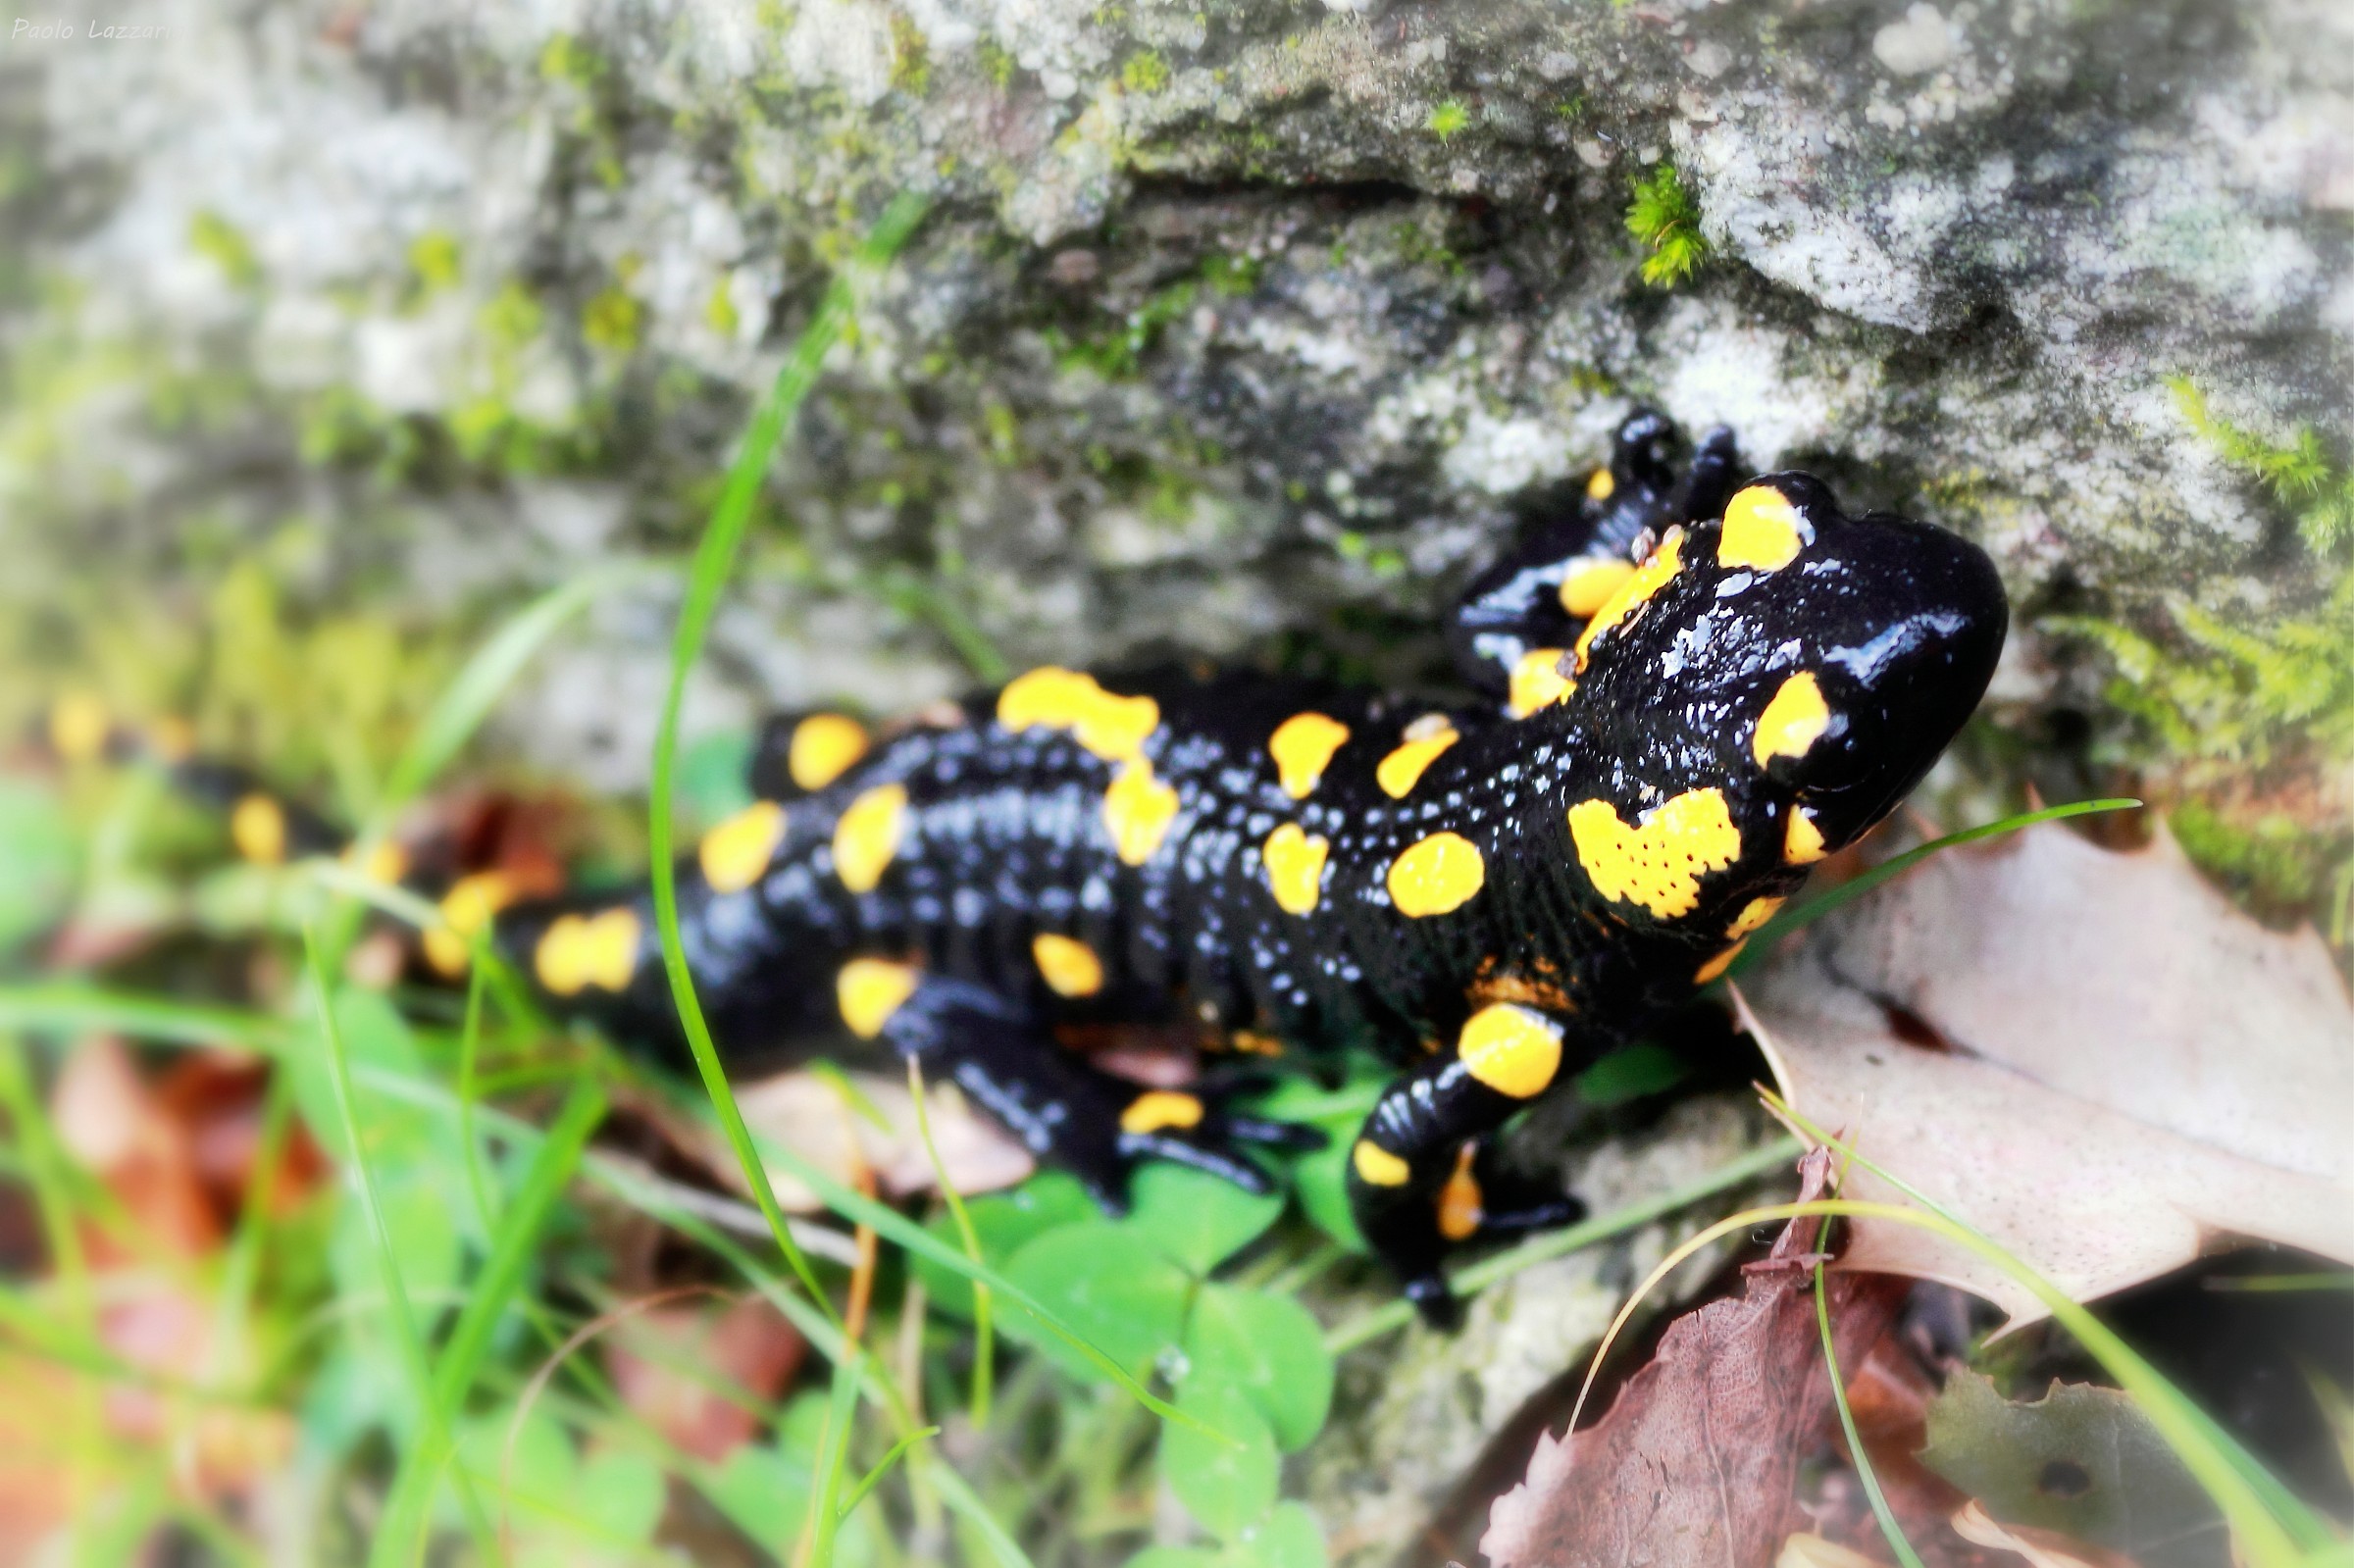 La salamandra di Montepiatto...